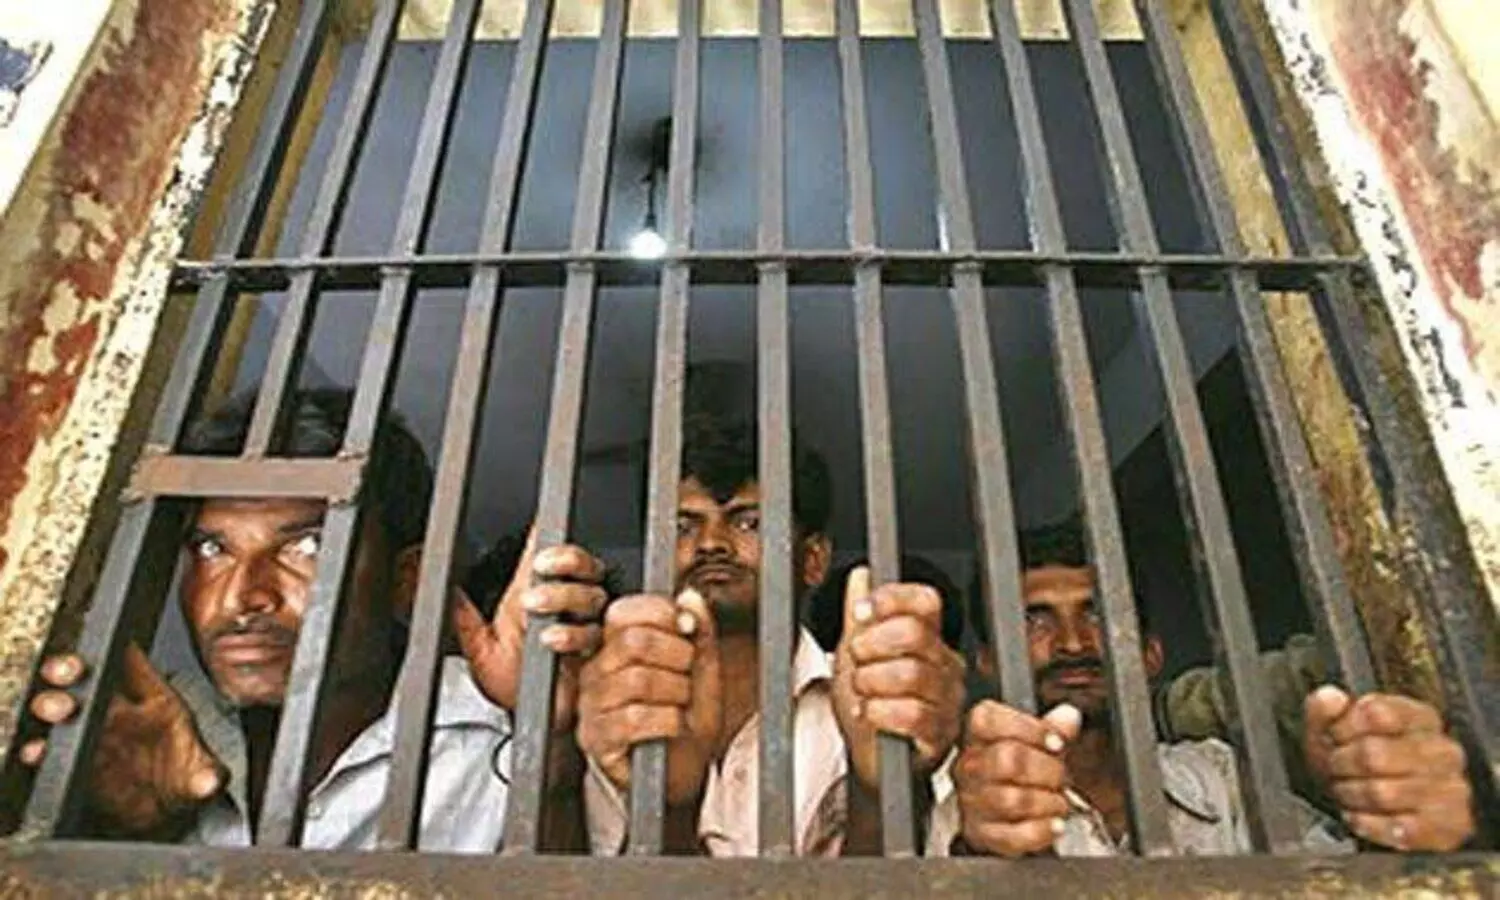 prisoner now again met their loved ones in jail